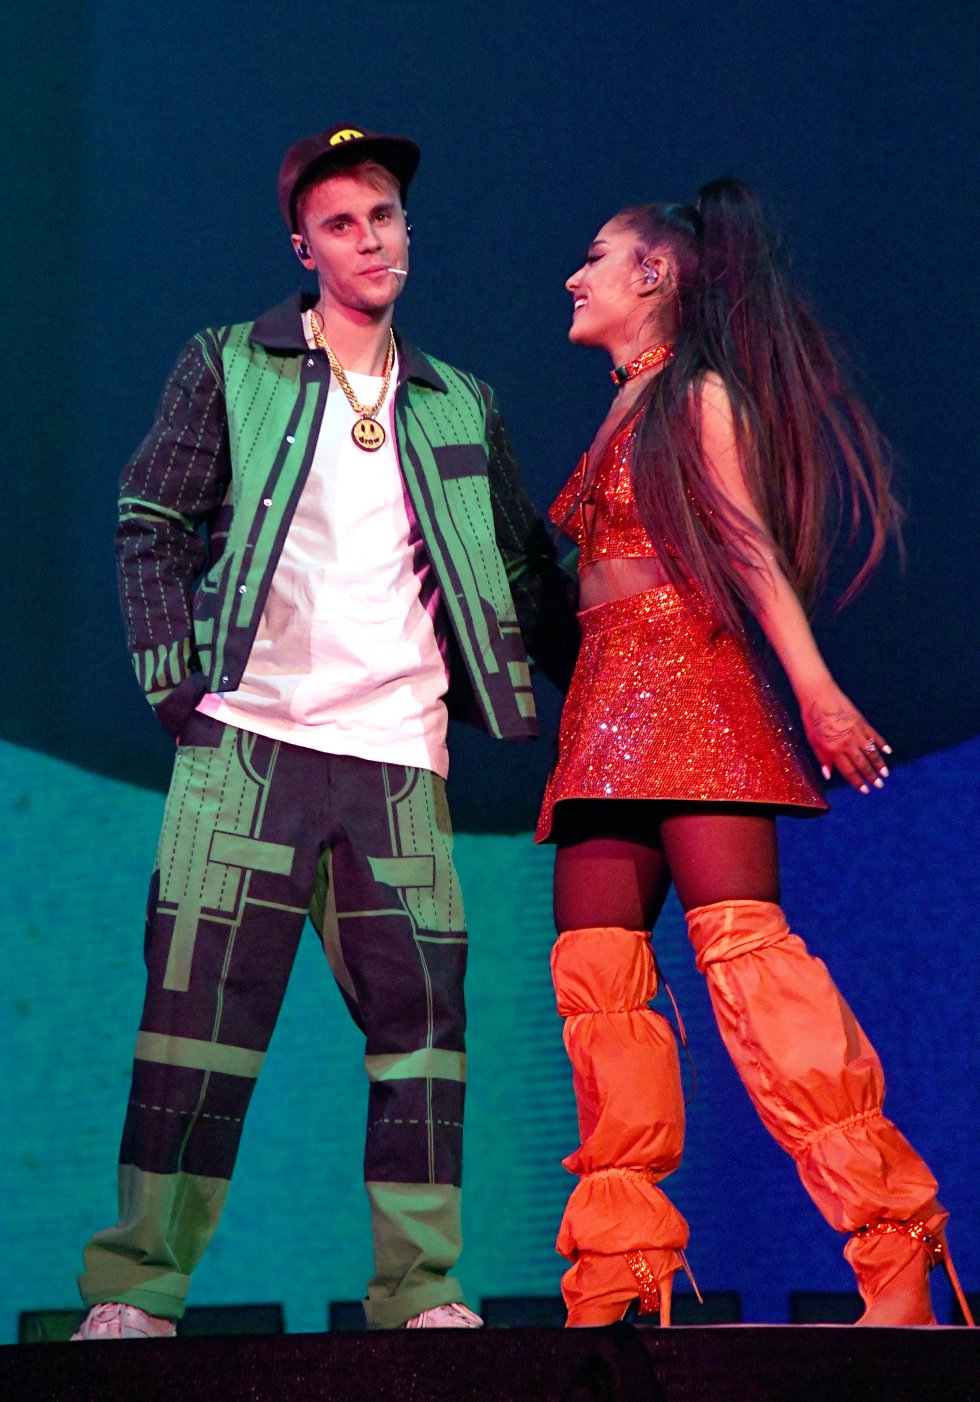 Ariana Grande invitó a Justin Bieber a su escenario y el canadiense anunció "álbum pronto". Hacía dos años que no cantaba en un escenario.